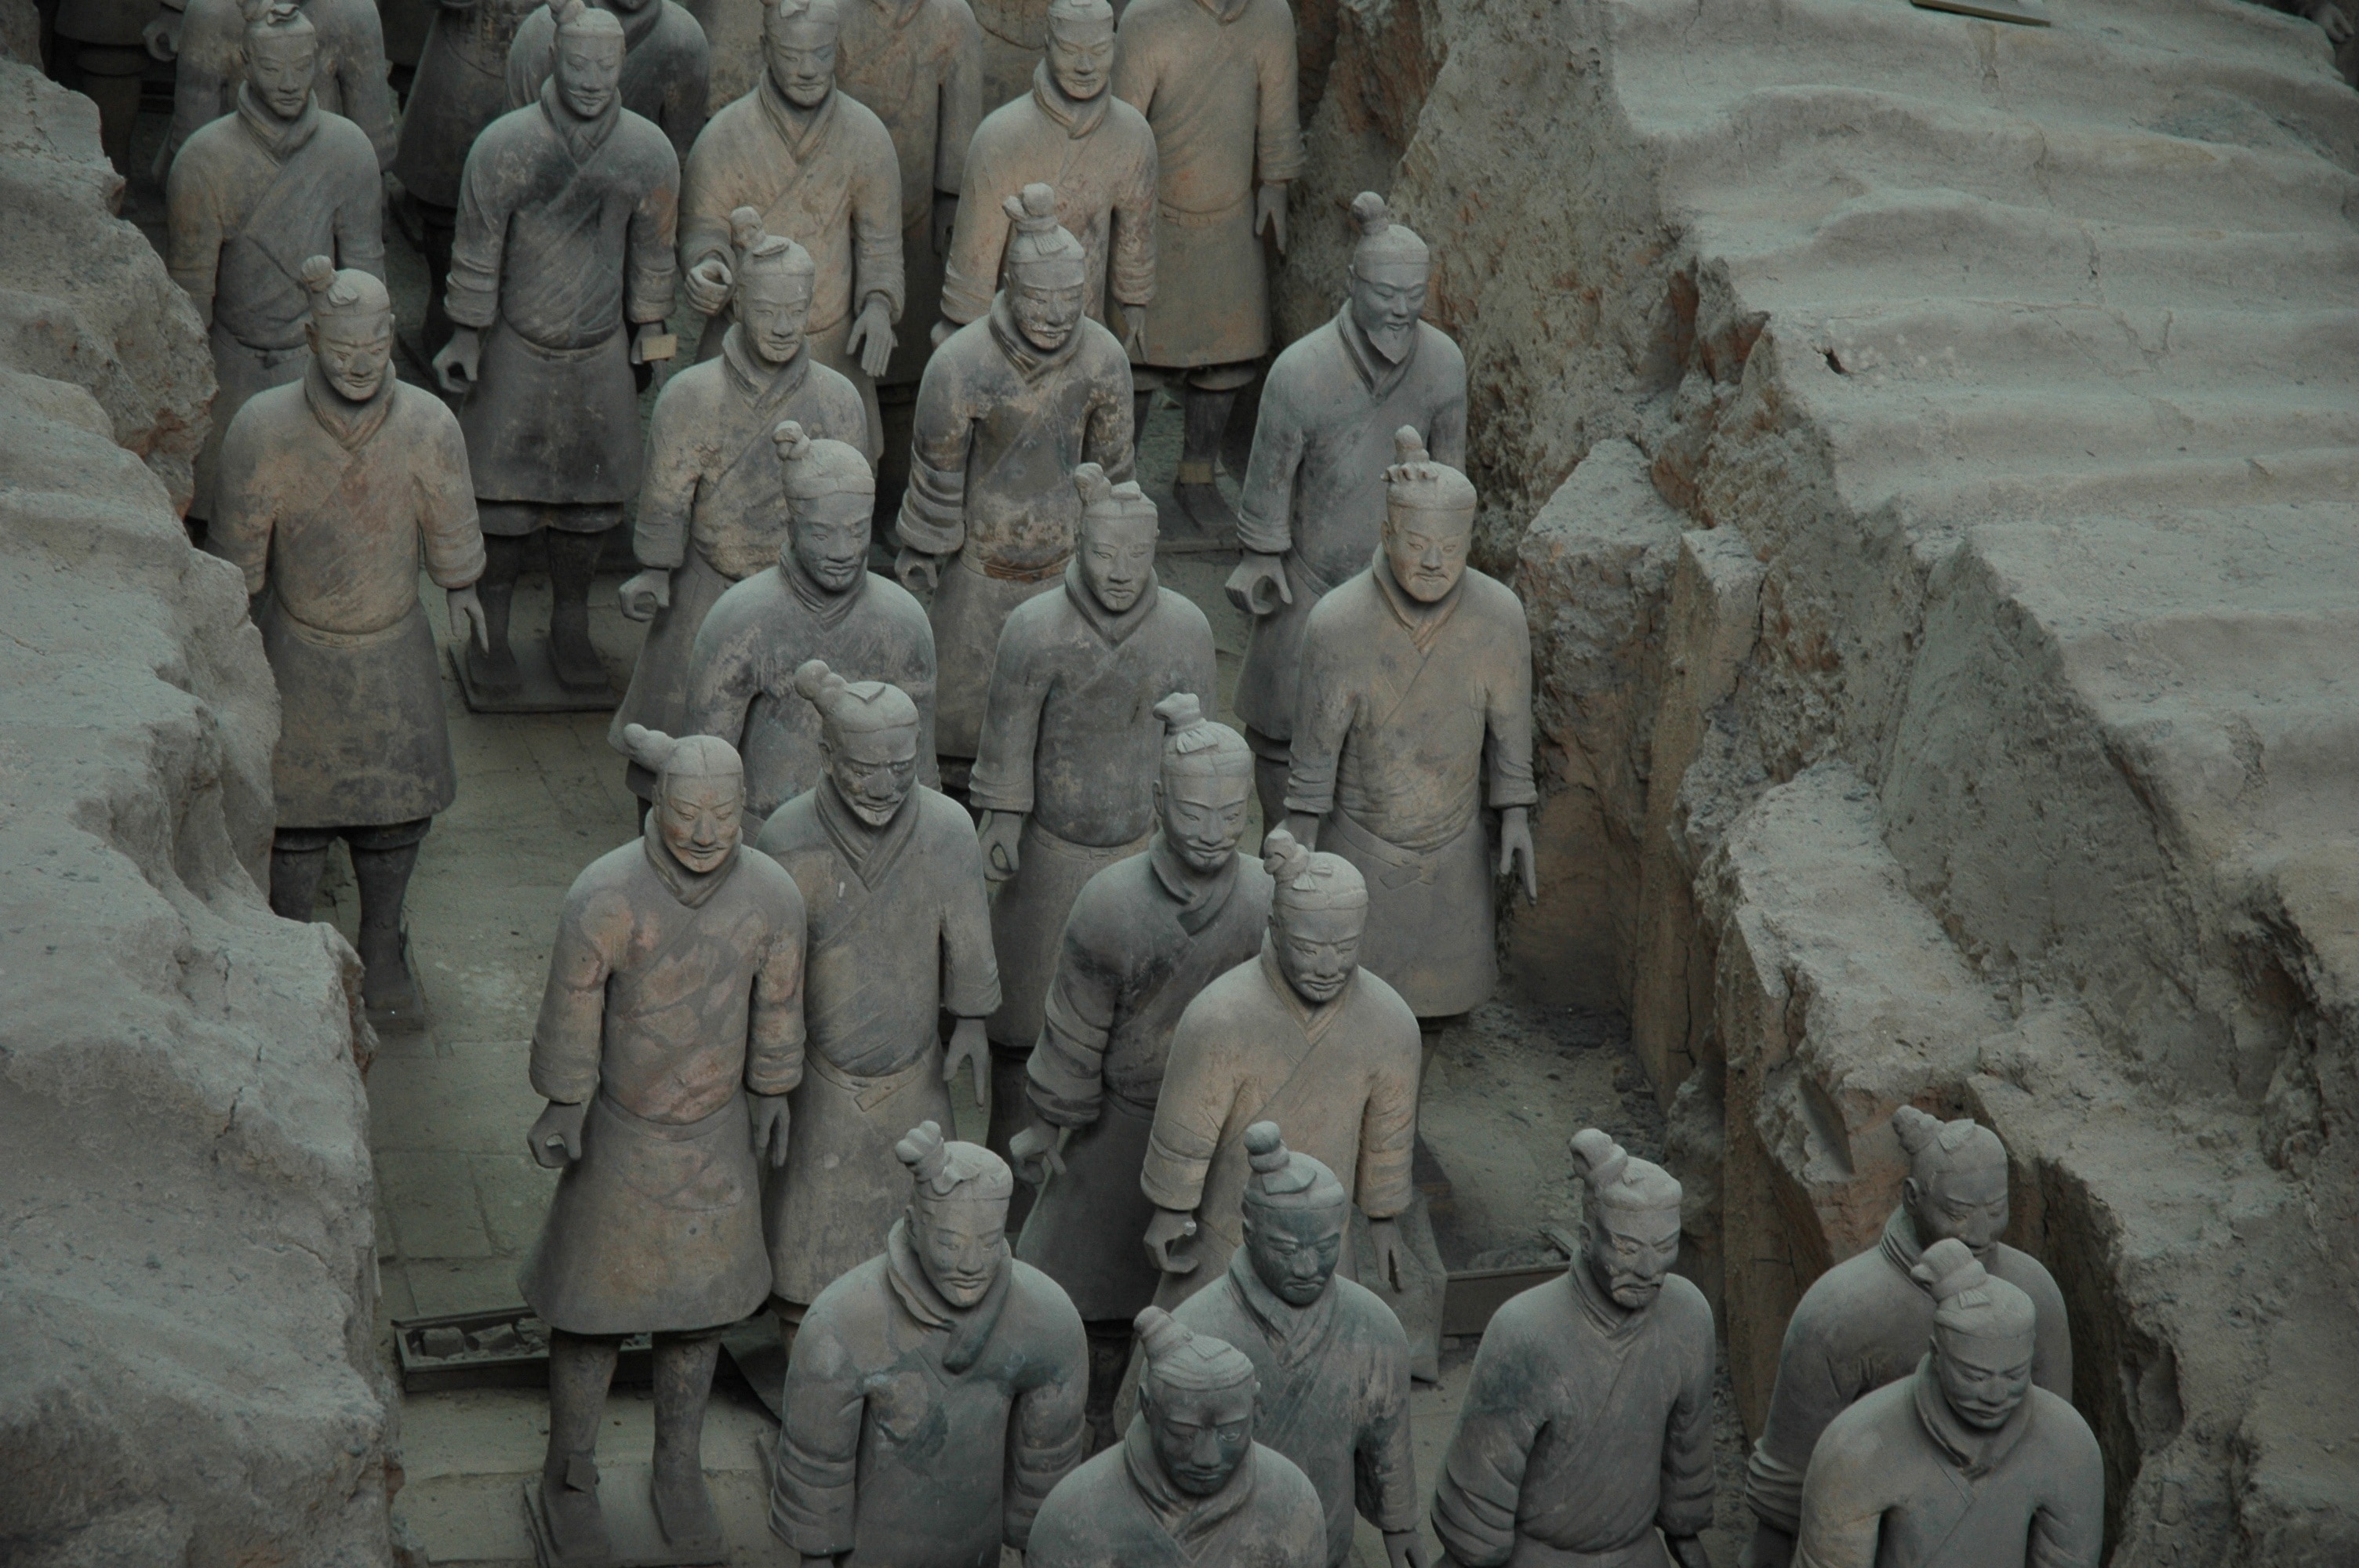 man wearing chinese dress statue lot